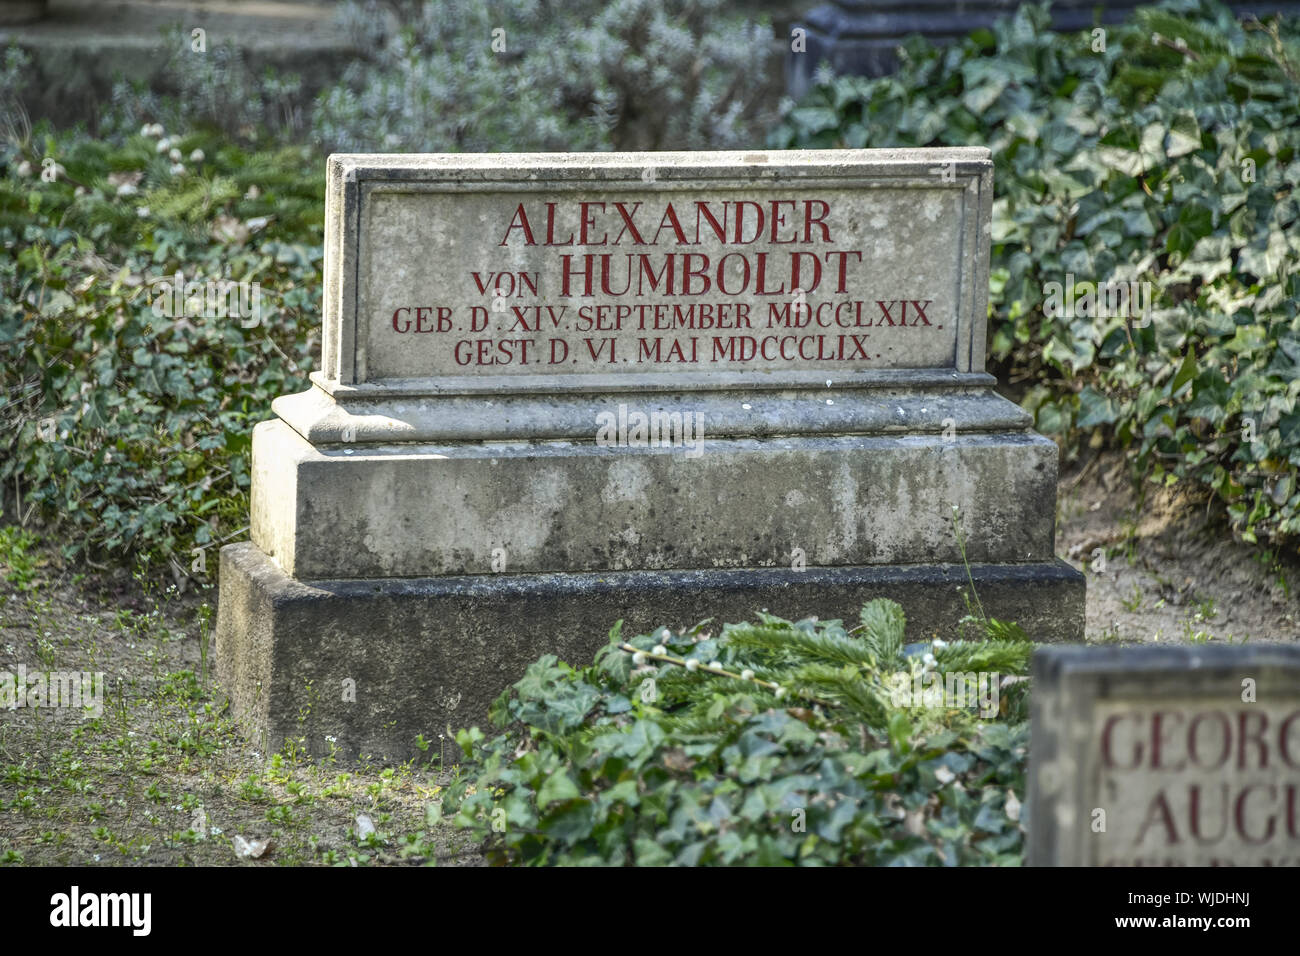 Alexander von Humboldt, enterrar, Berlín, Alemania, el cementerio, grave, grave, grave arreglo arreglo Humboldt, lápidas, acuerdo verde, verde ar Foto de stock